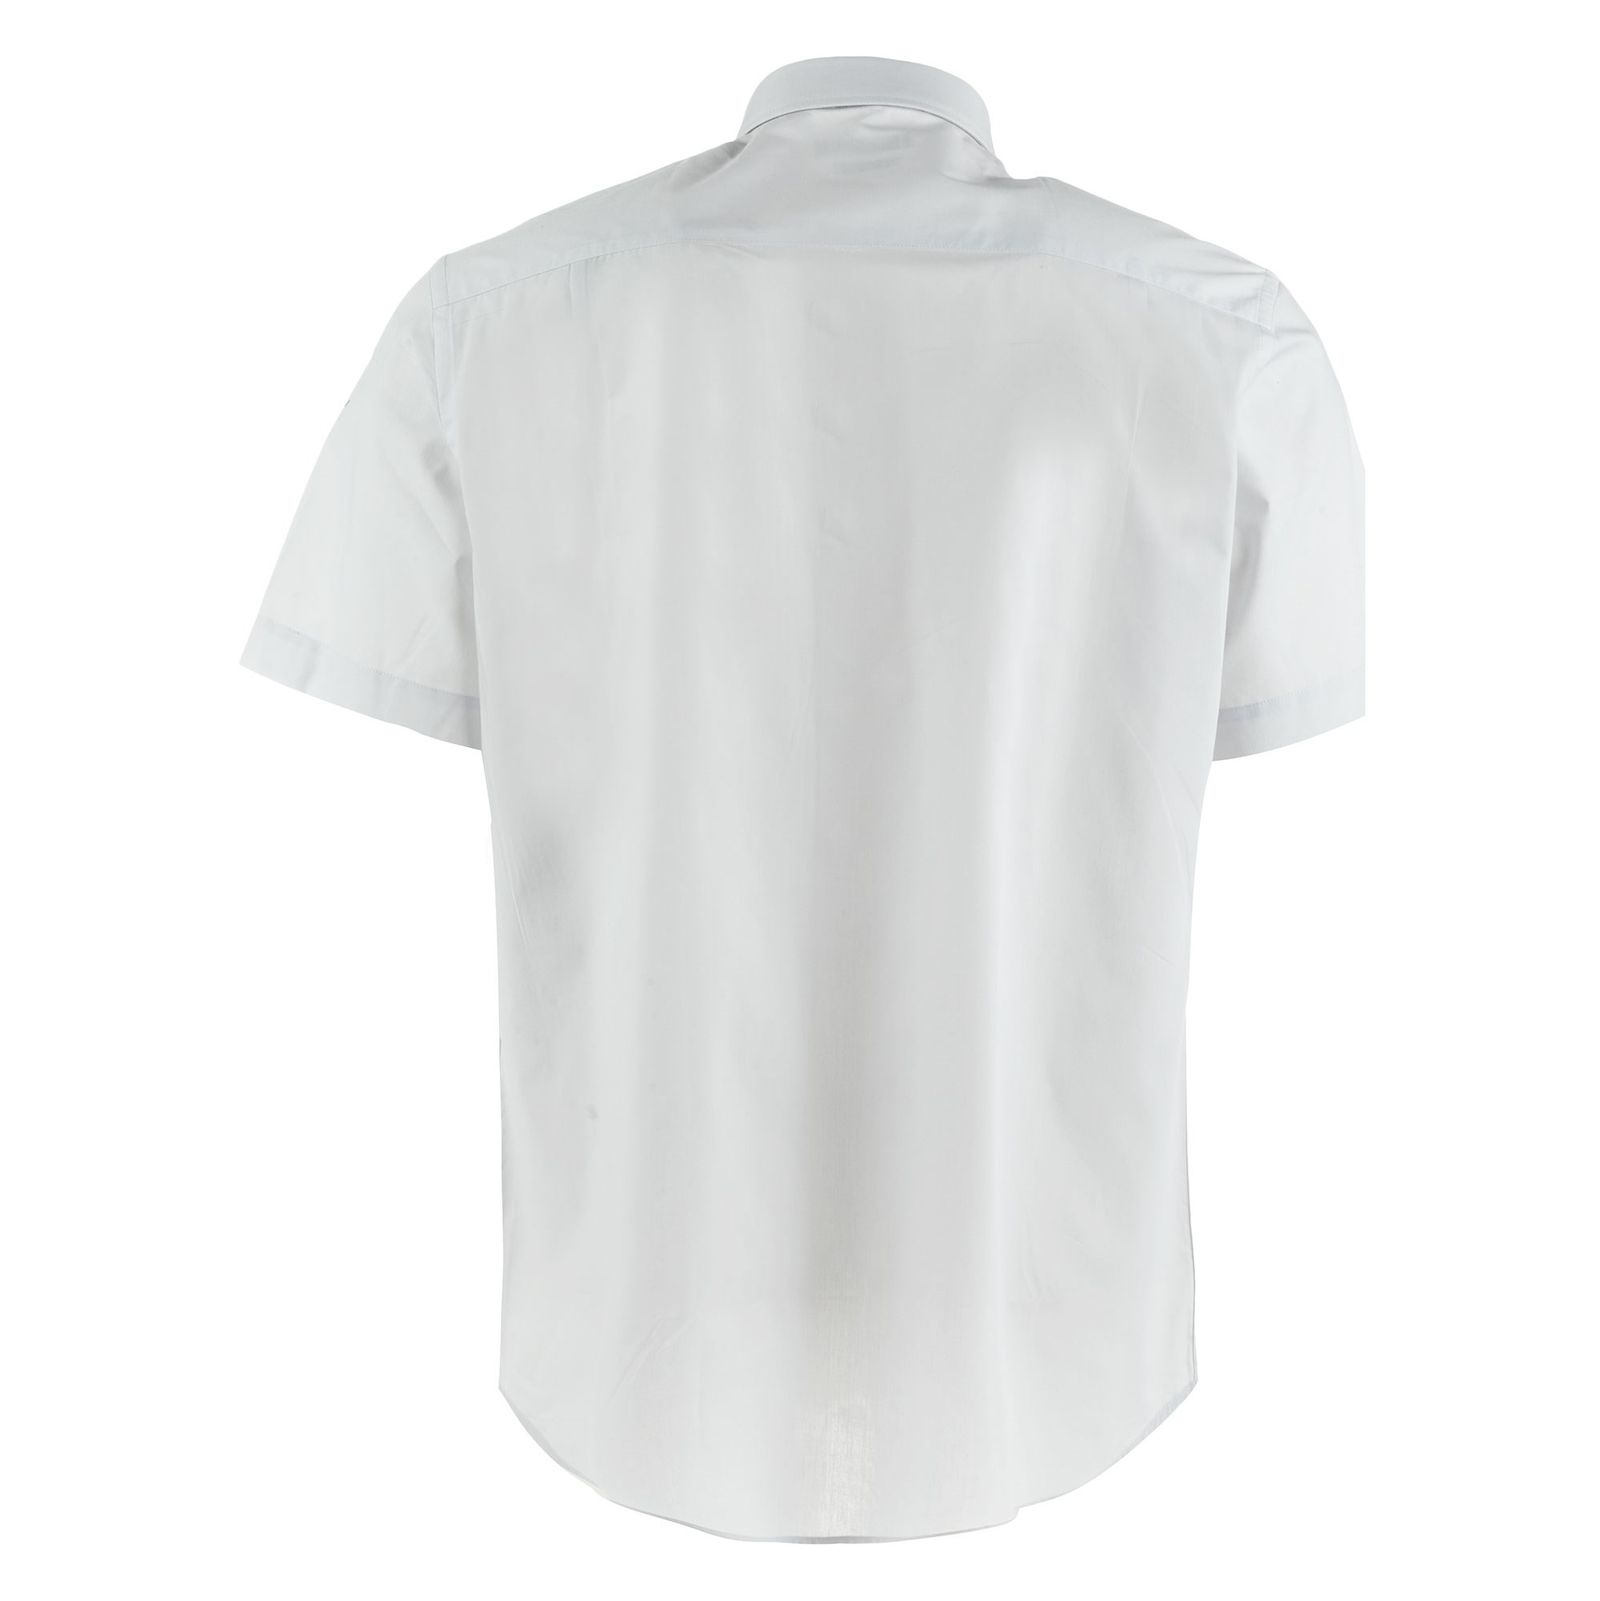 پیراهن آستین کوتاه مردانه - یوپیم - طوسي کمرنگ - 3